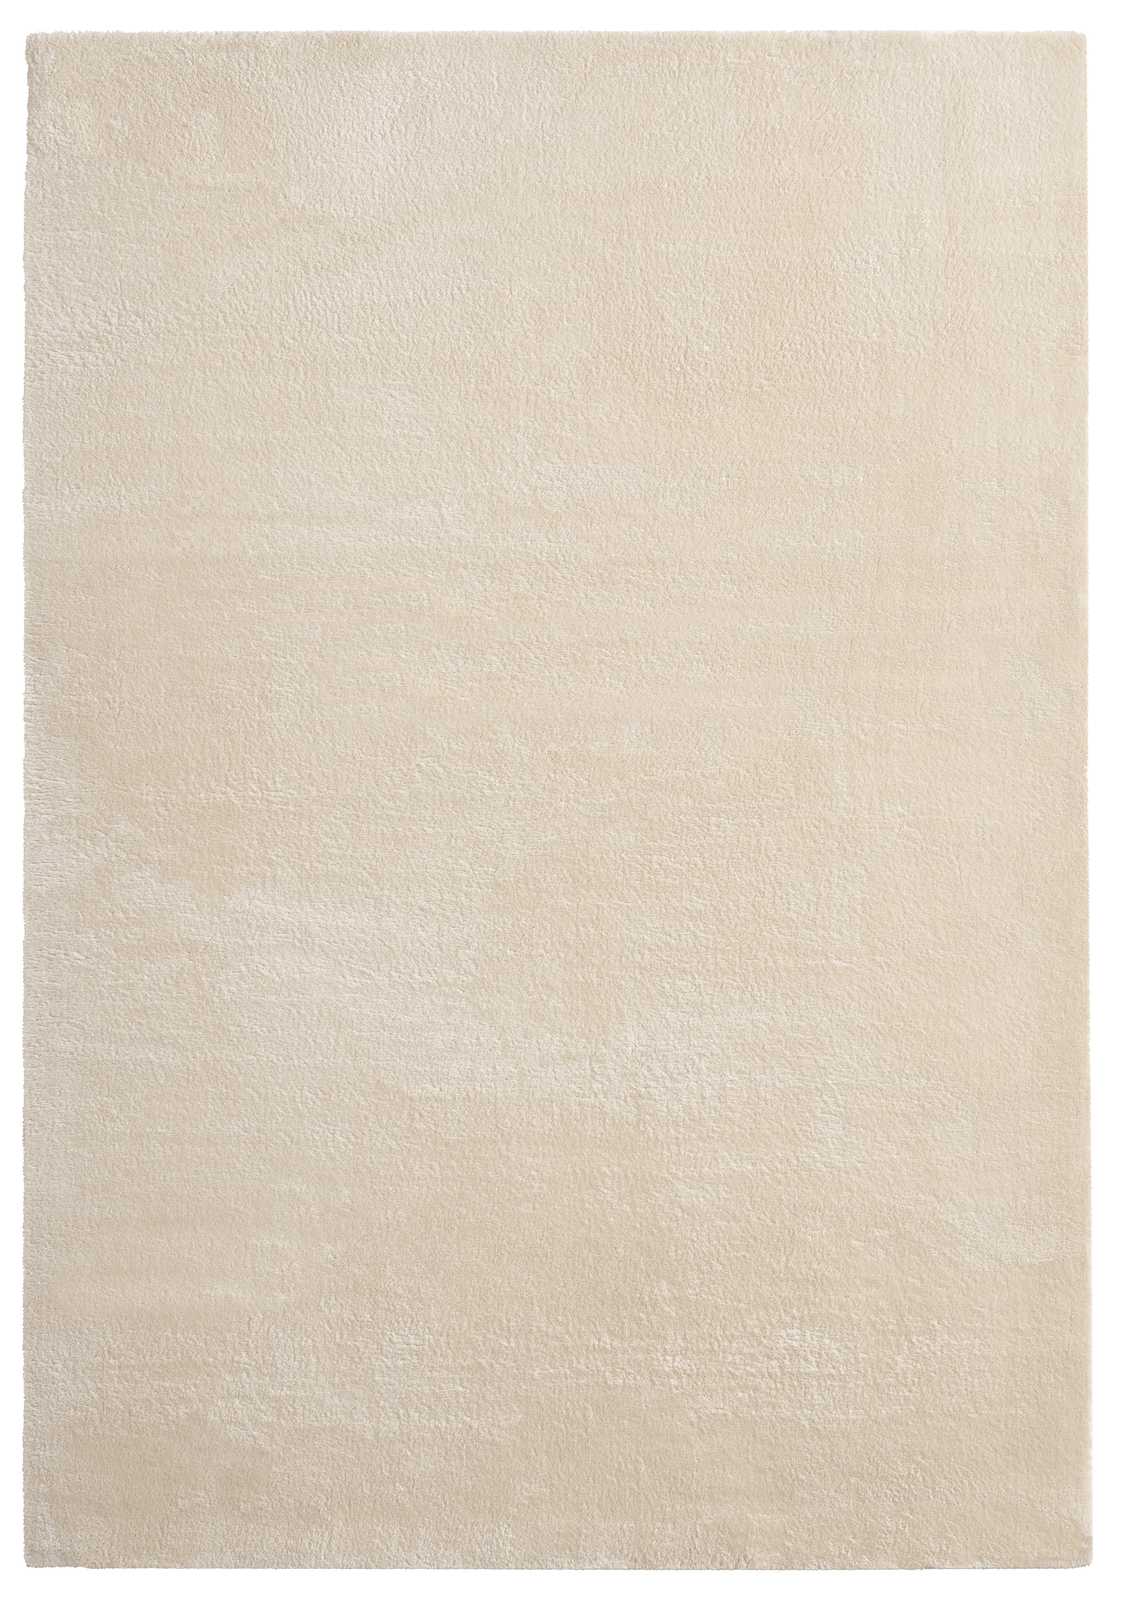             Zacht hoogpolig tapijt in beige - 110 x 60 cm
        